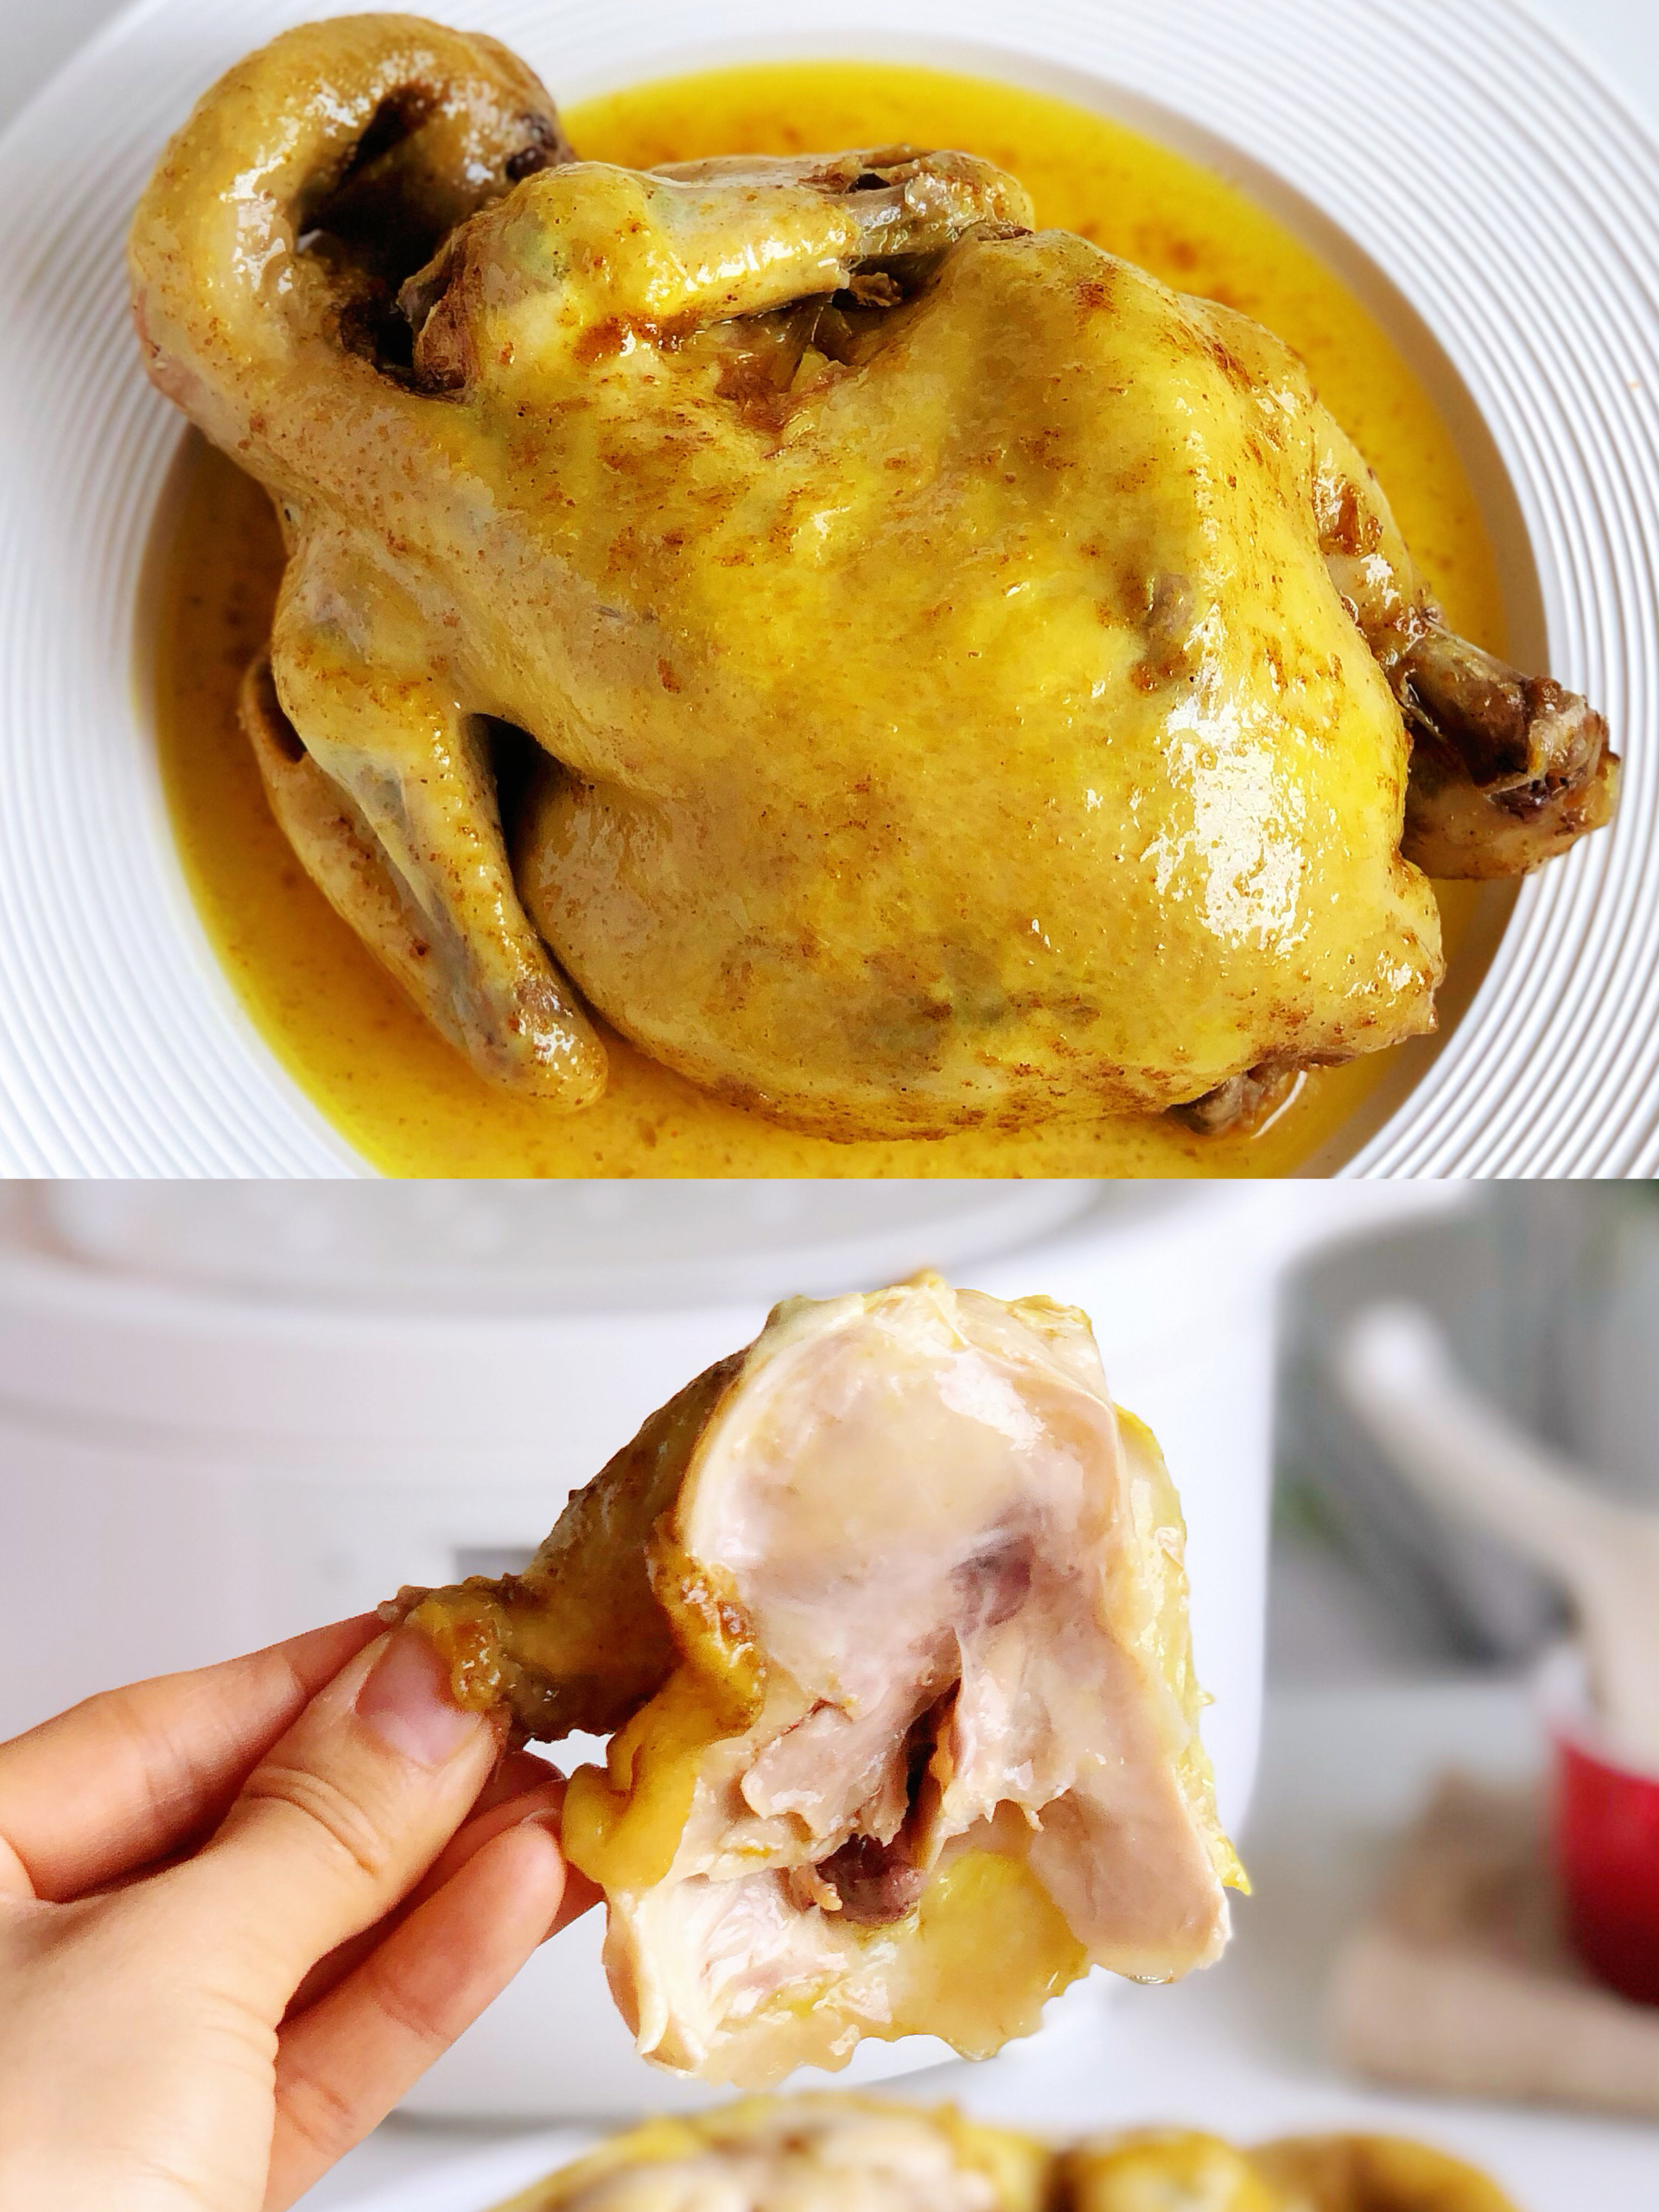 家庭版免烤窑鸡，无需烤箱做法超简单！色泽金黄鲜嫩多汁轻松脱骨